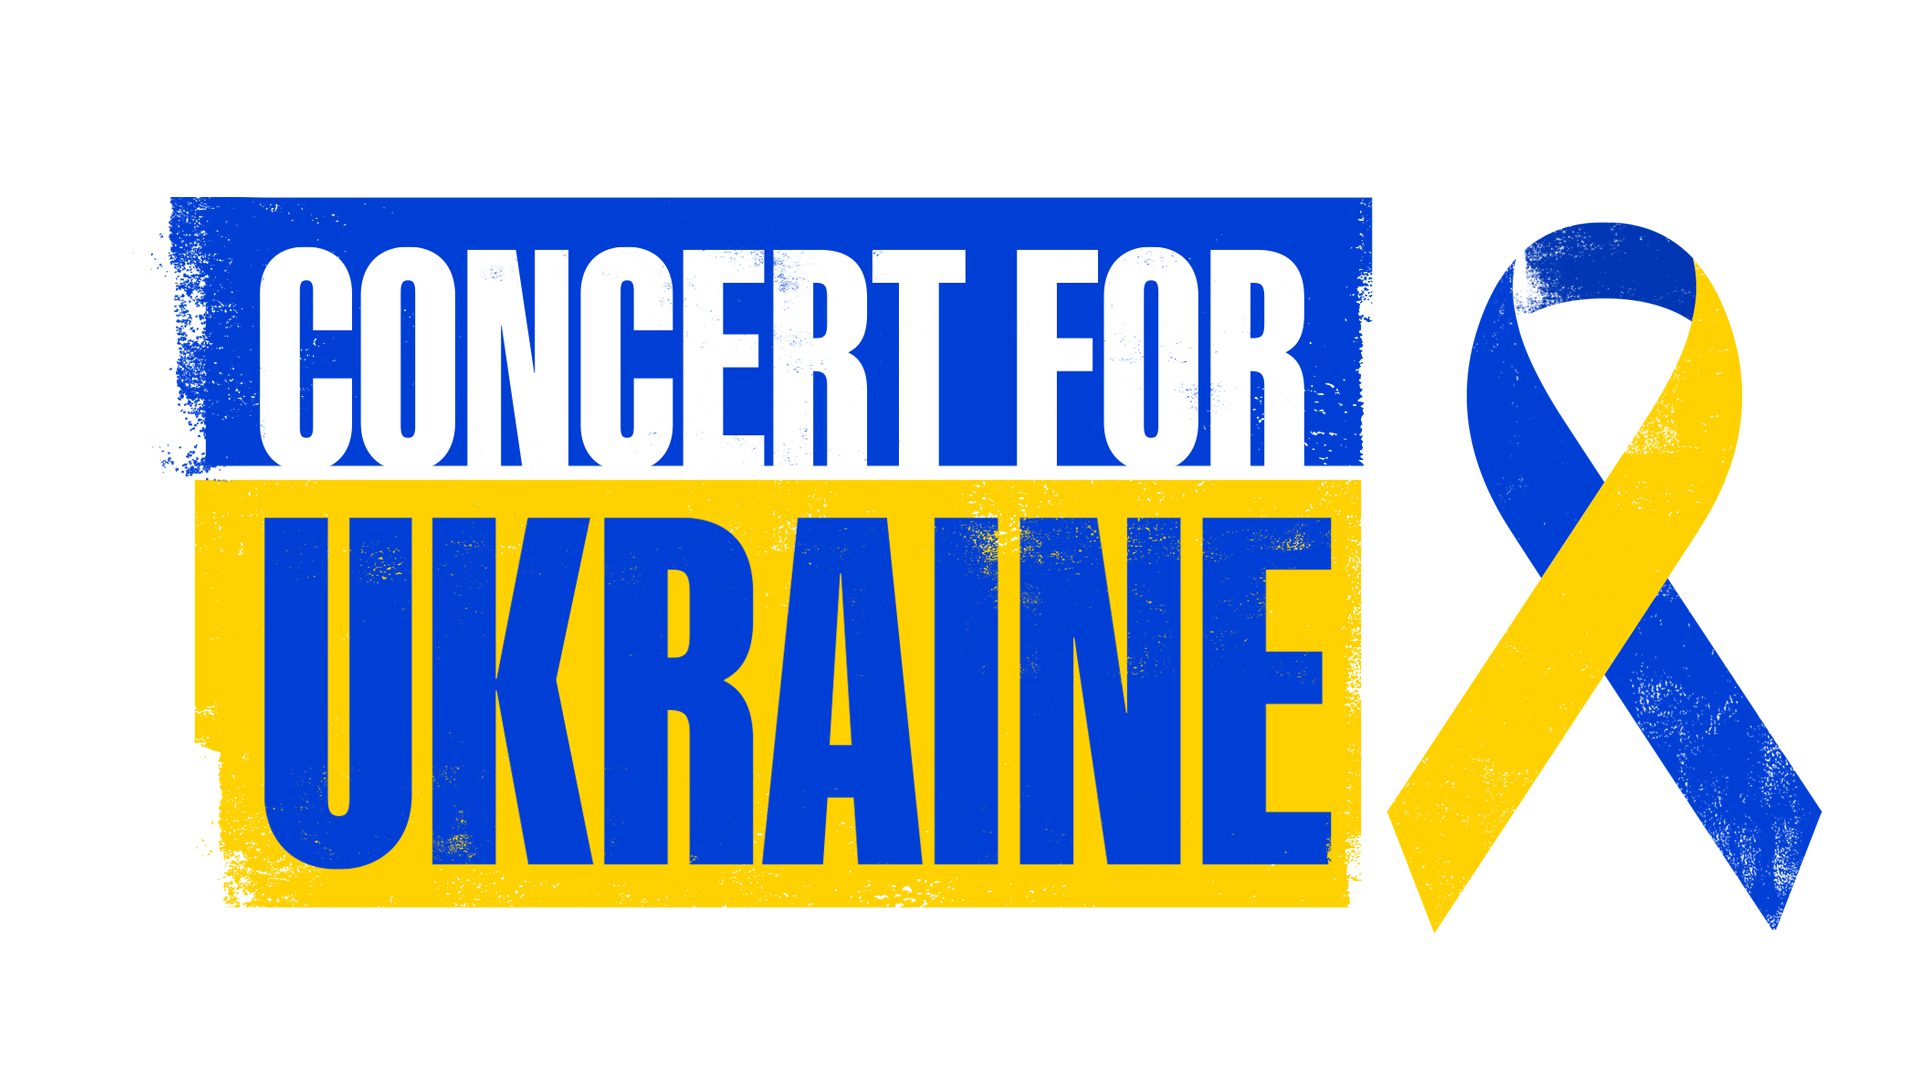 £13.4 million raised from Concert For Ukraine